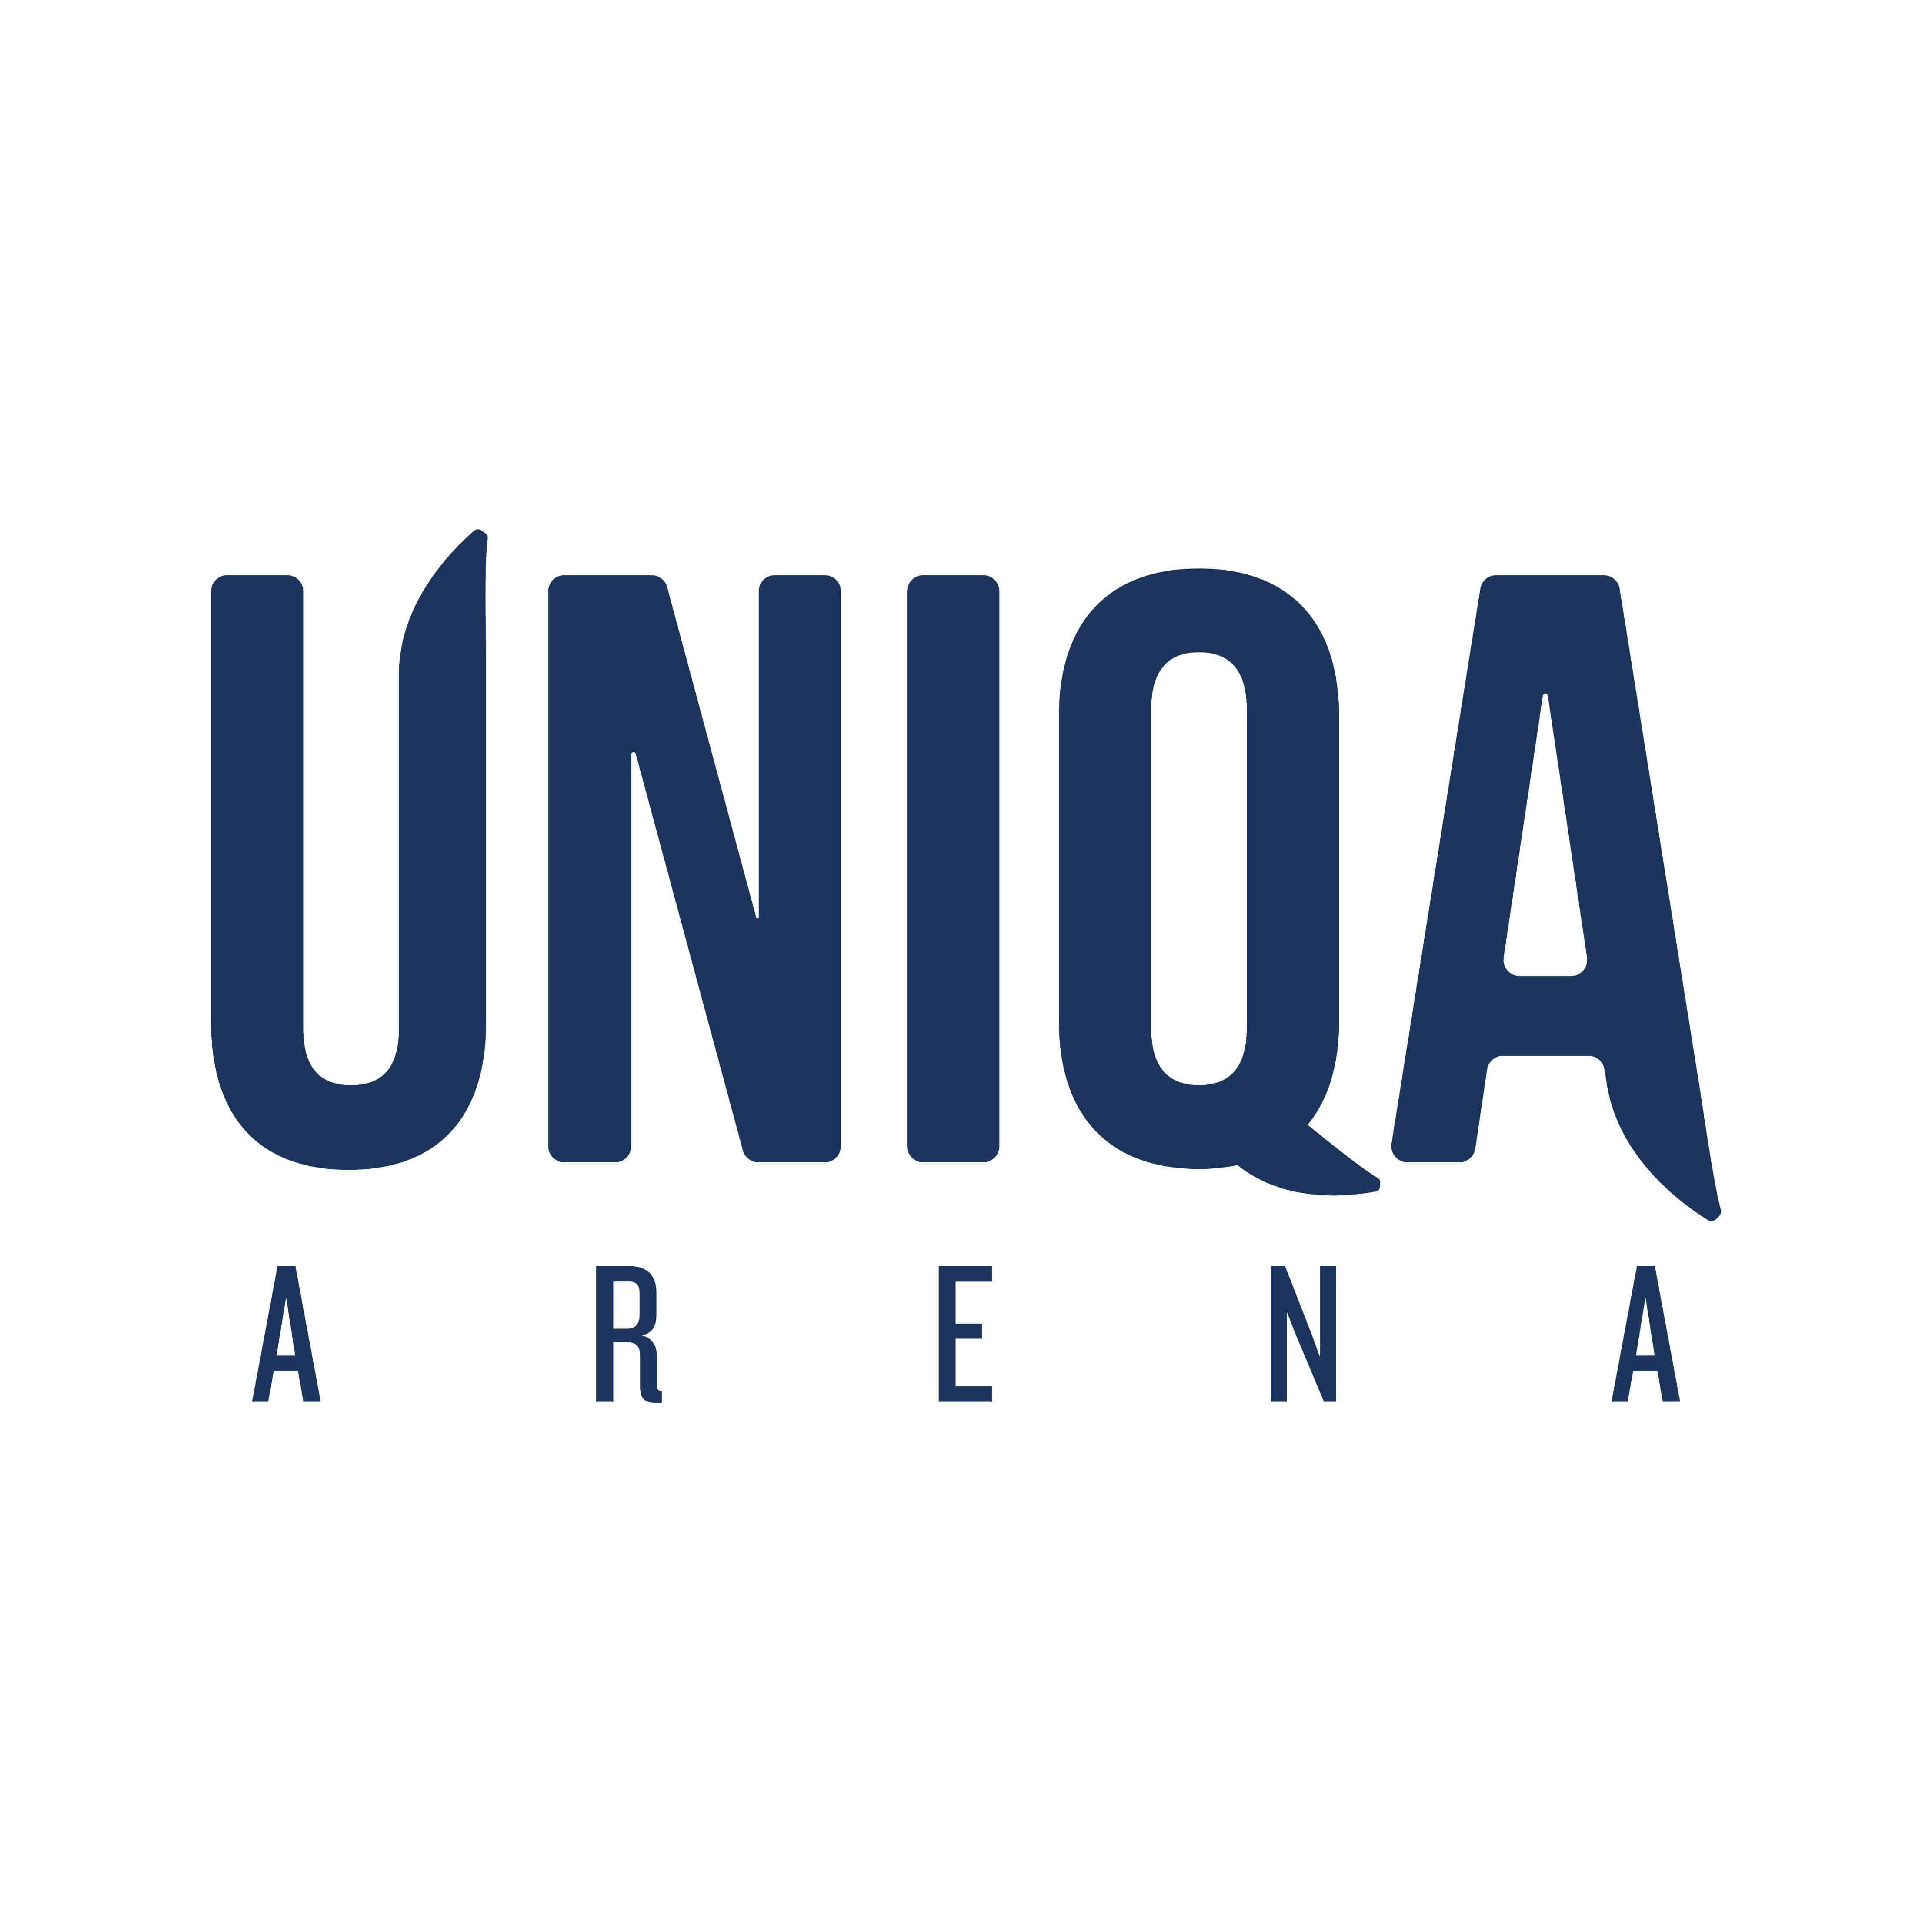 UNIQA arena